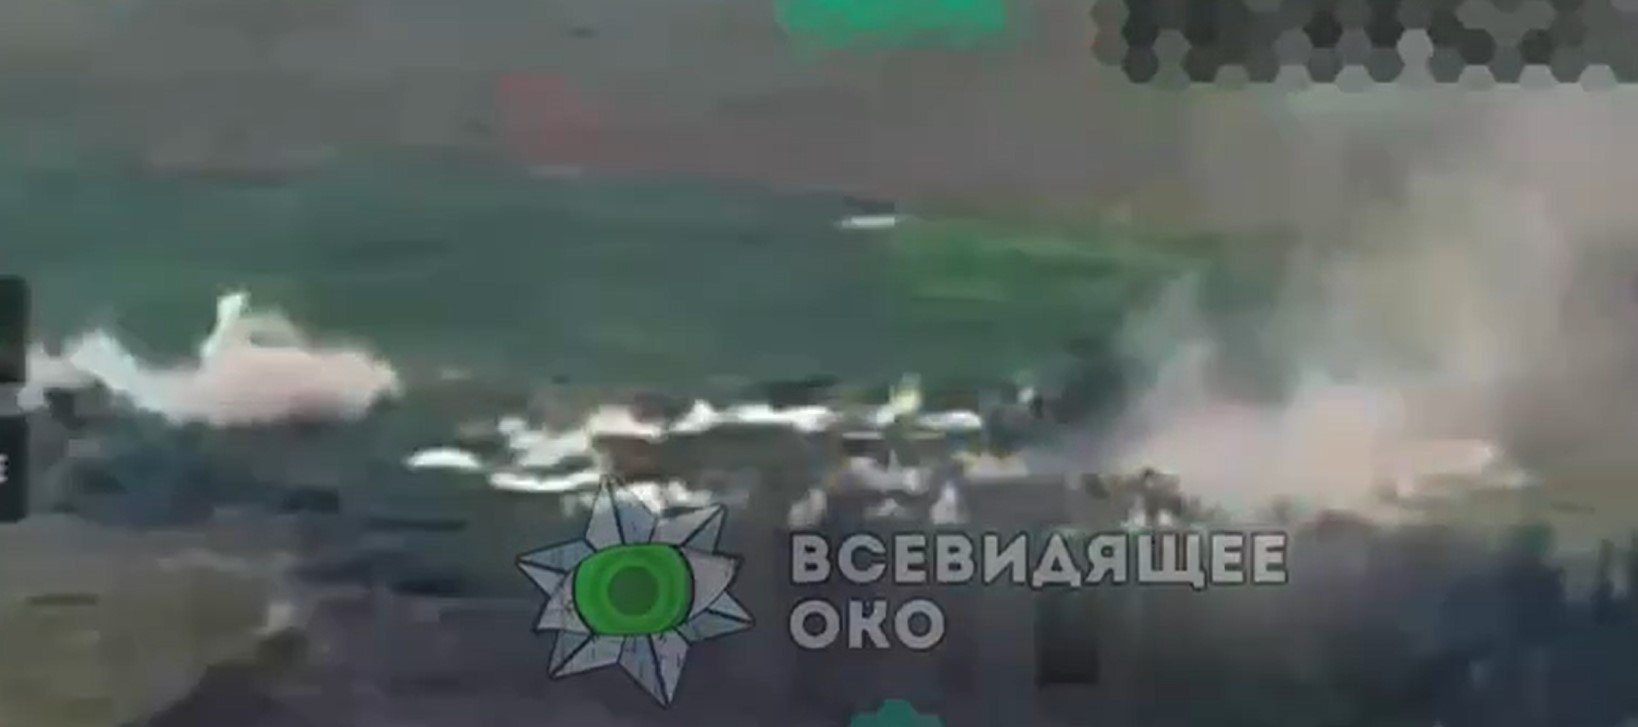 미국 클러스터 폭탄을 배치하는 우크라이나 인의 첫 번째 영상